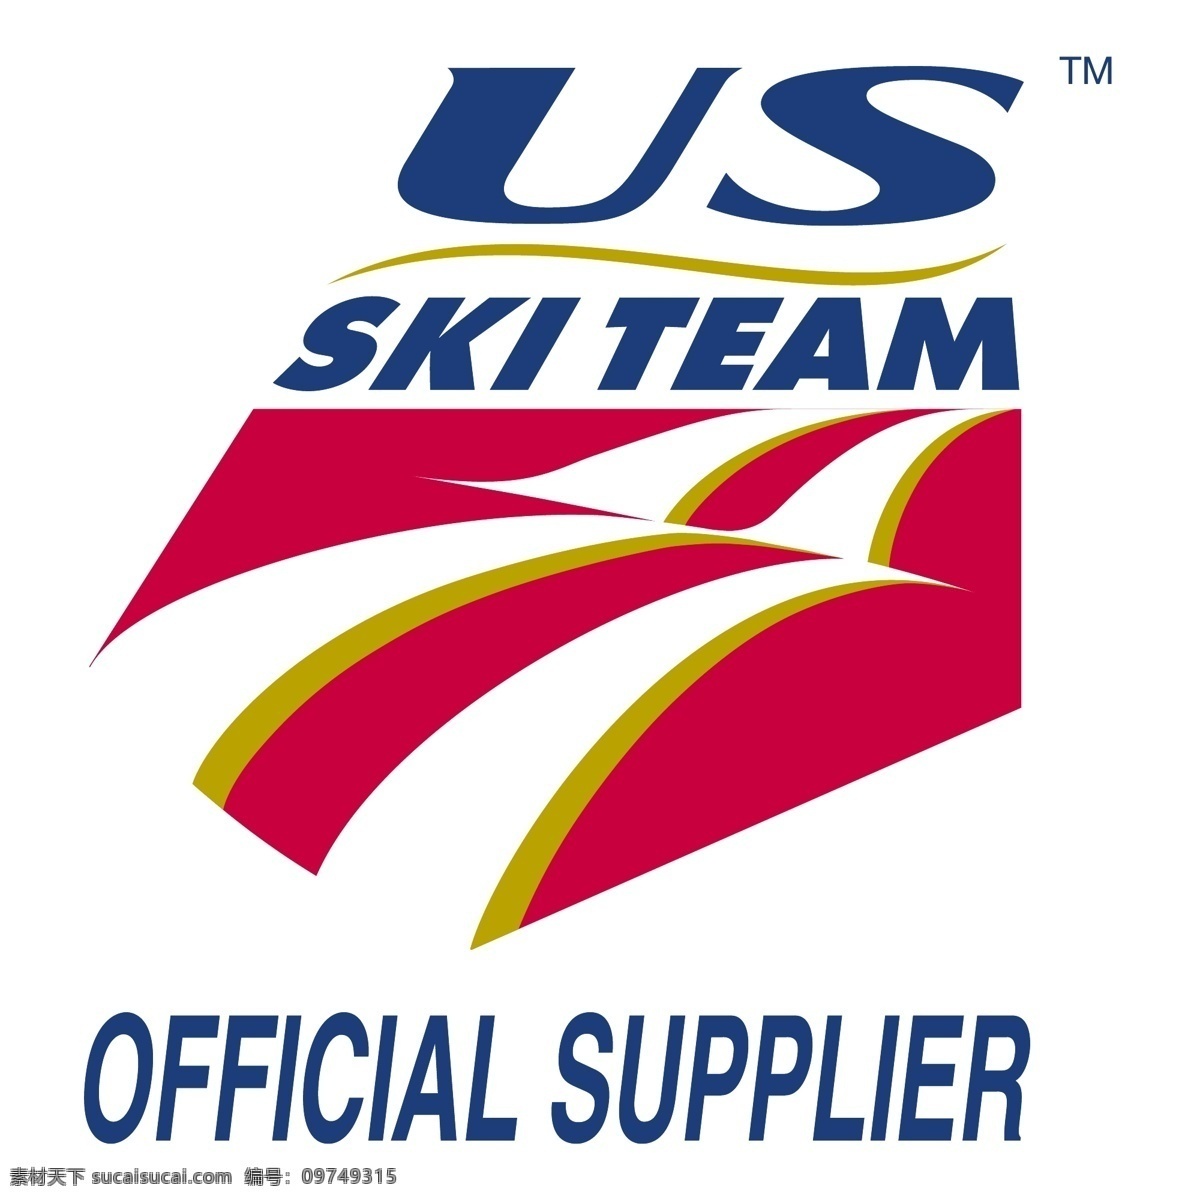 美国 滑雪 队 官方 供应商 我们的团队 滑雪队 队官方 官方供应商 矢量 美国滑雪队 向量 我们 我们滑雪 矢量滑雪队 矢量图 建筑家居